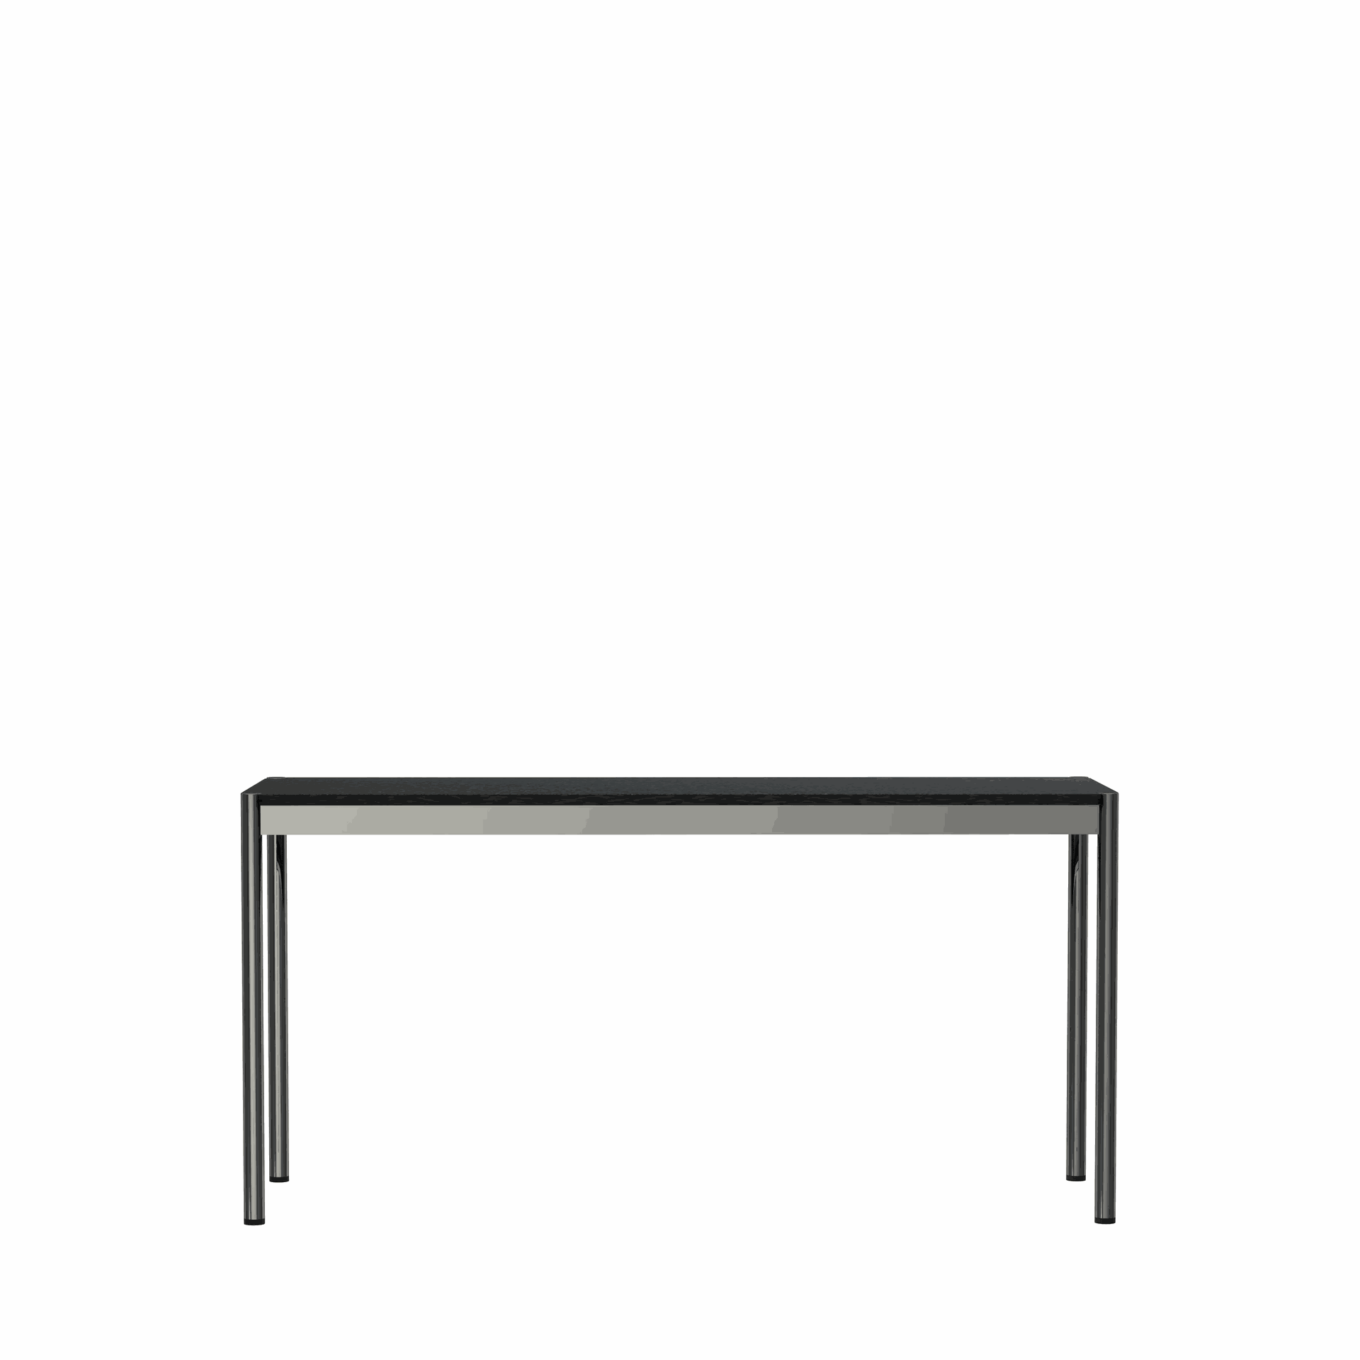 Table étroite L1500 USM Haller – Linoléum - Image #1